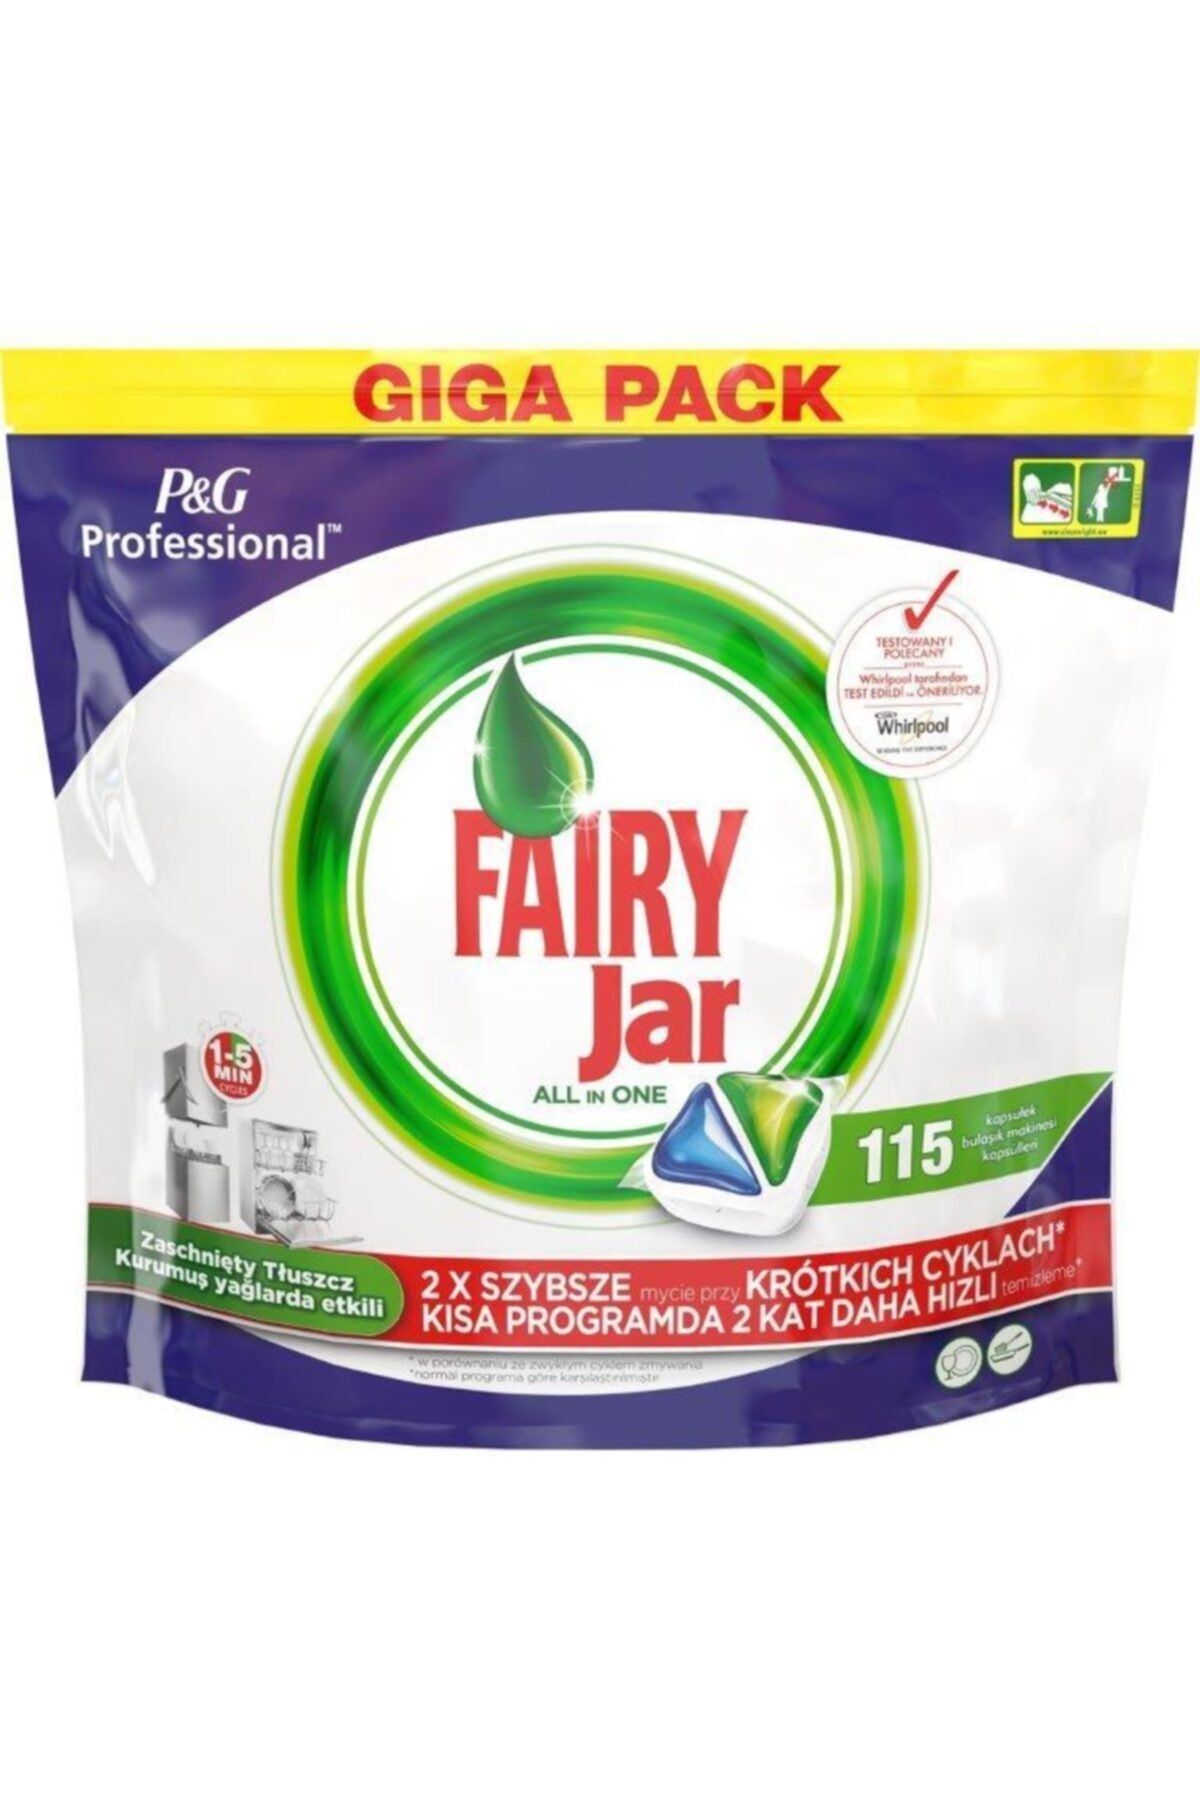 Fairy Professional Jar Hepsi Bir Arada Bulaşık Mak. Deterjanı 115li